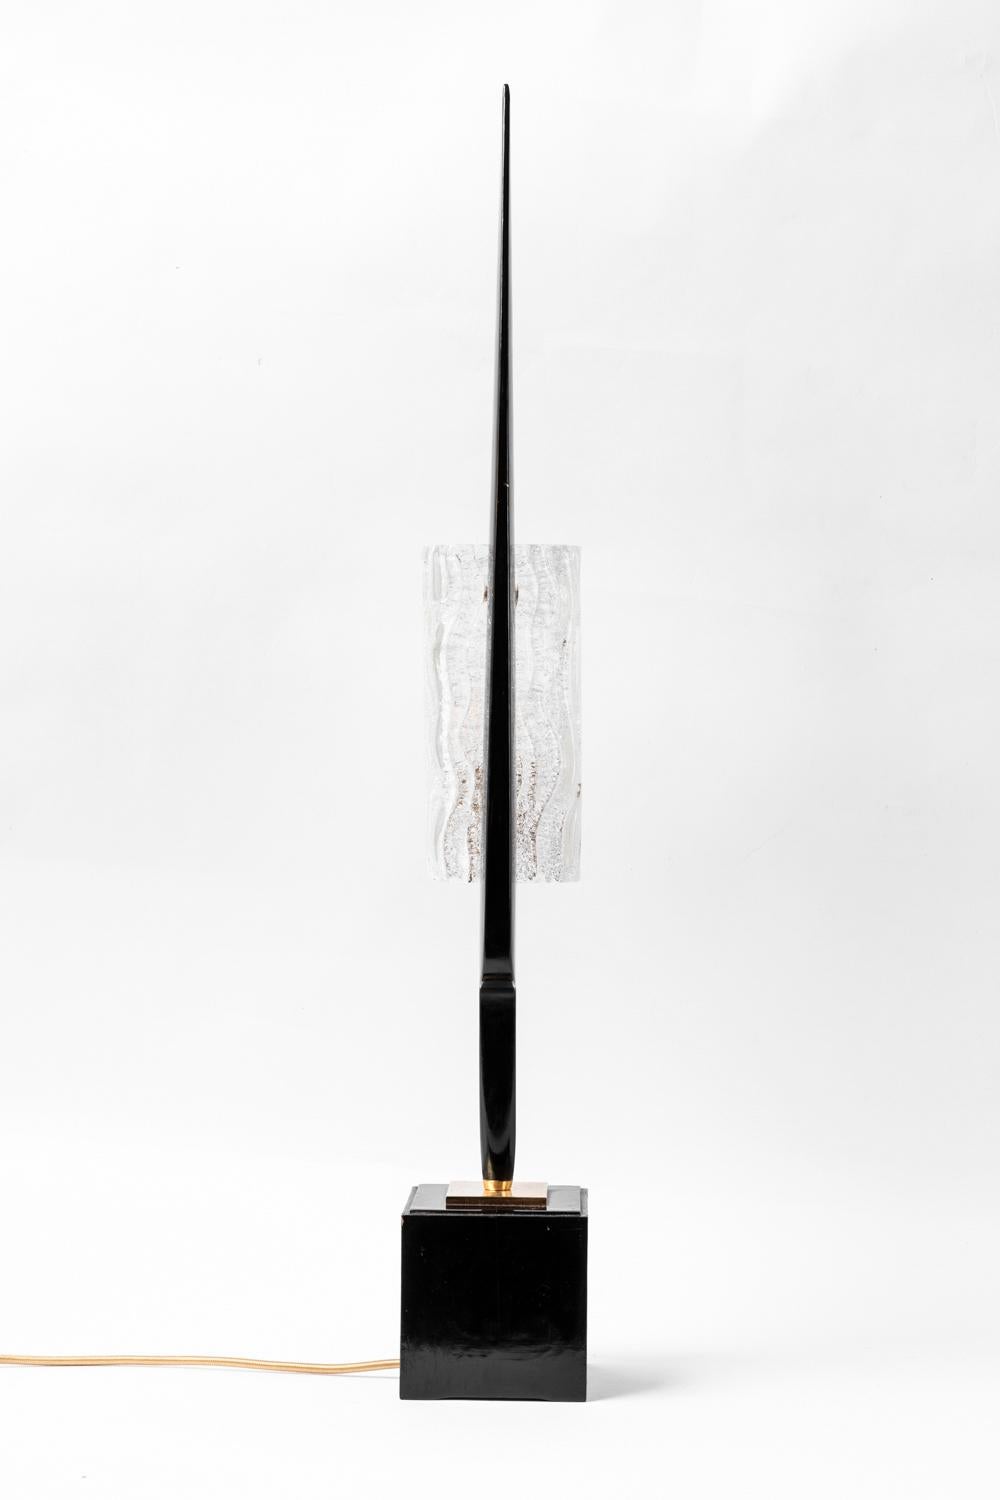 Maison Arlus, zugeschrieben.
Lampe aus schwarz lackiertem Holz und Glas. Kubischer Sockel aus schwarz lackiertem Holz, der eine schwarze, schlanke Form trägt, in die ein rechteckiger, dicker Lampenschirm aus Glas mit geschnitzten Wellenmustern